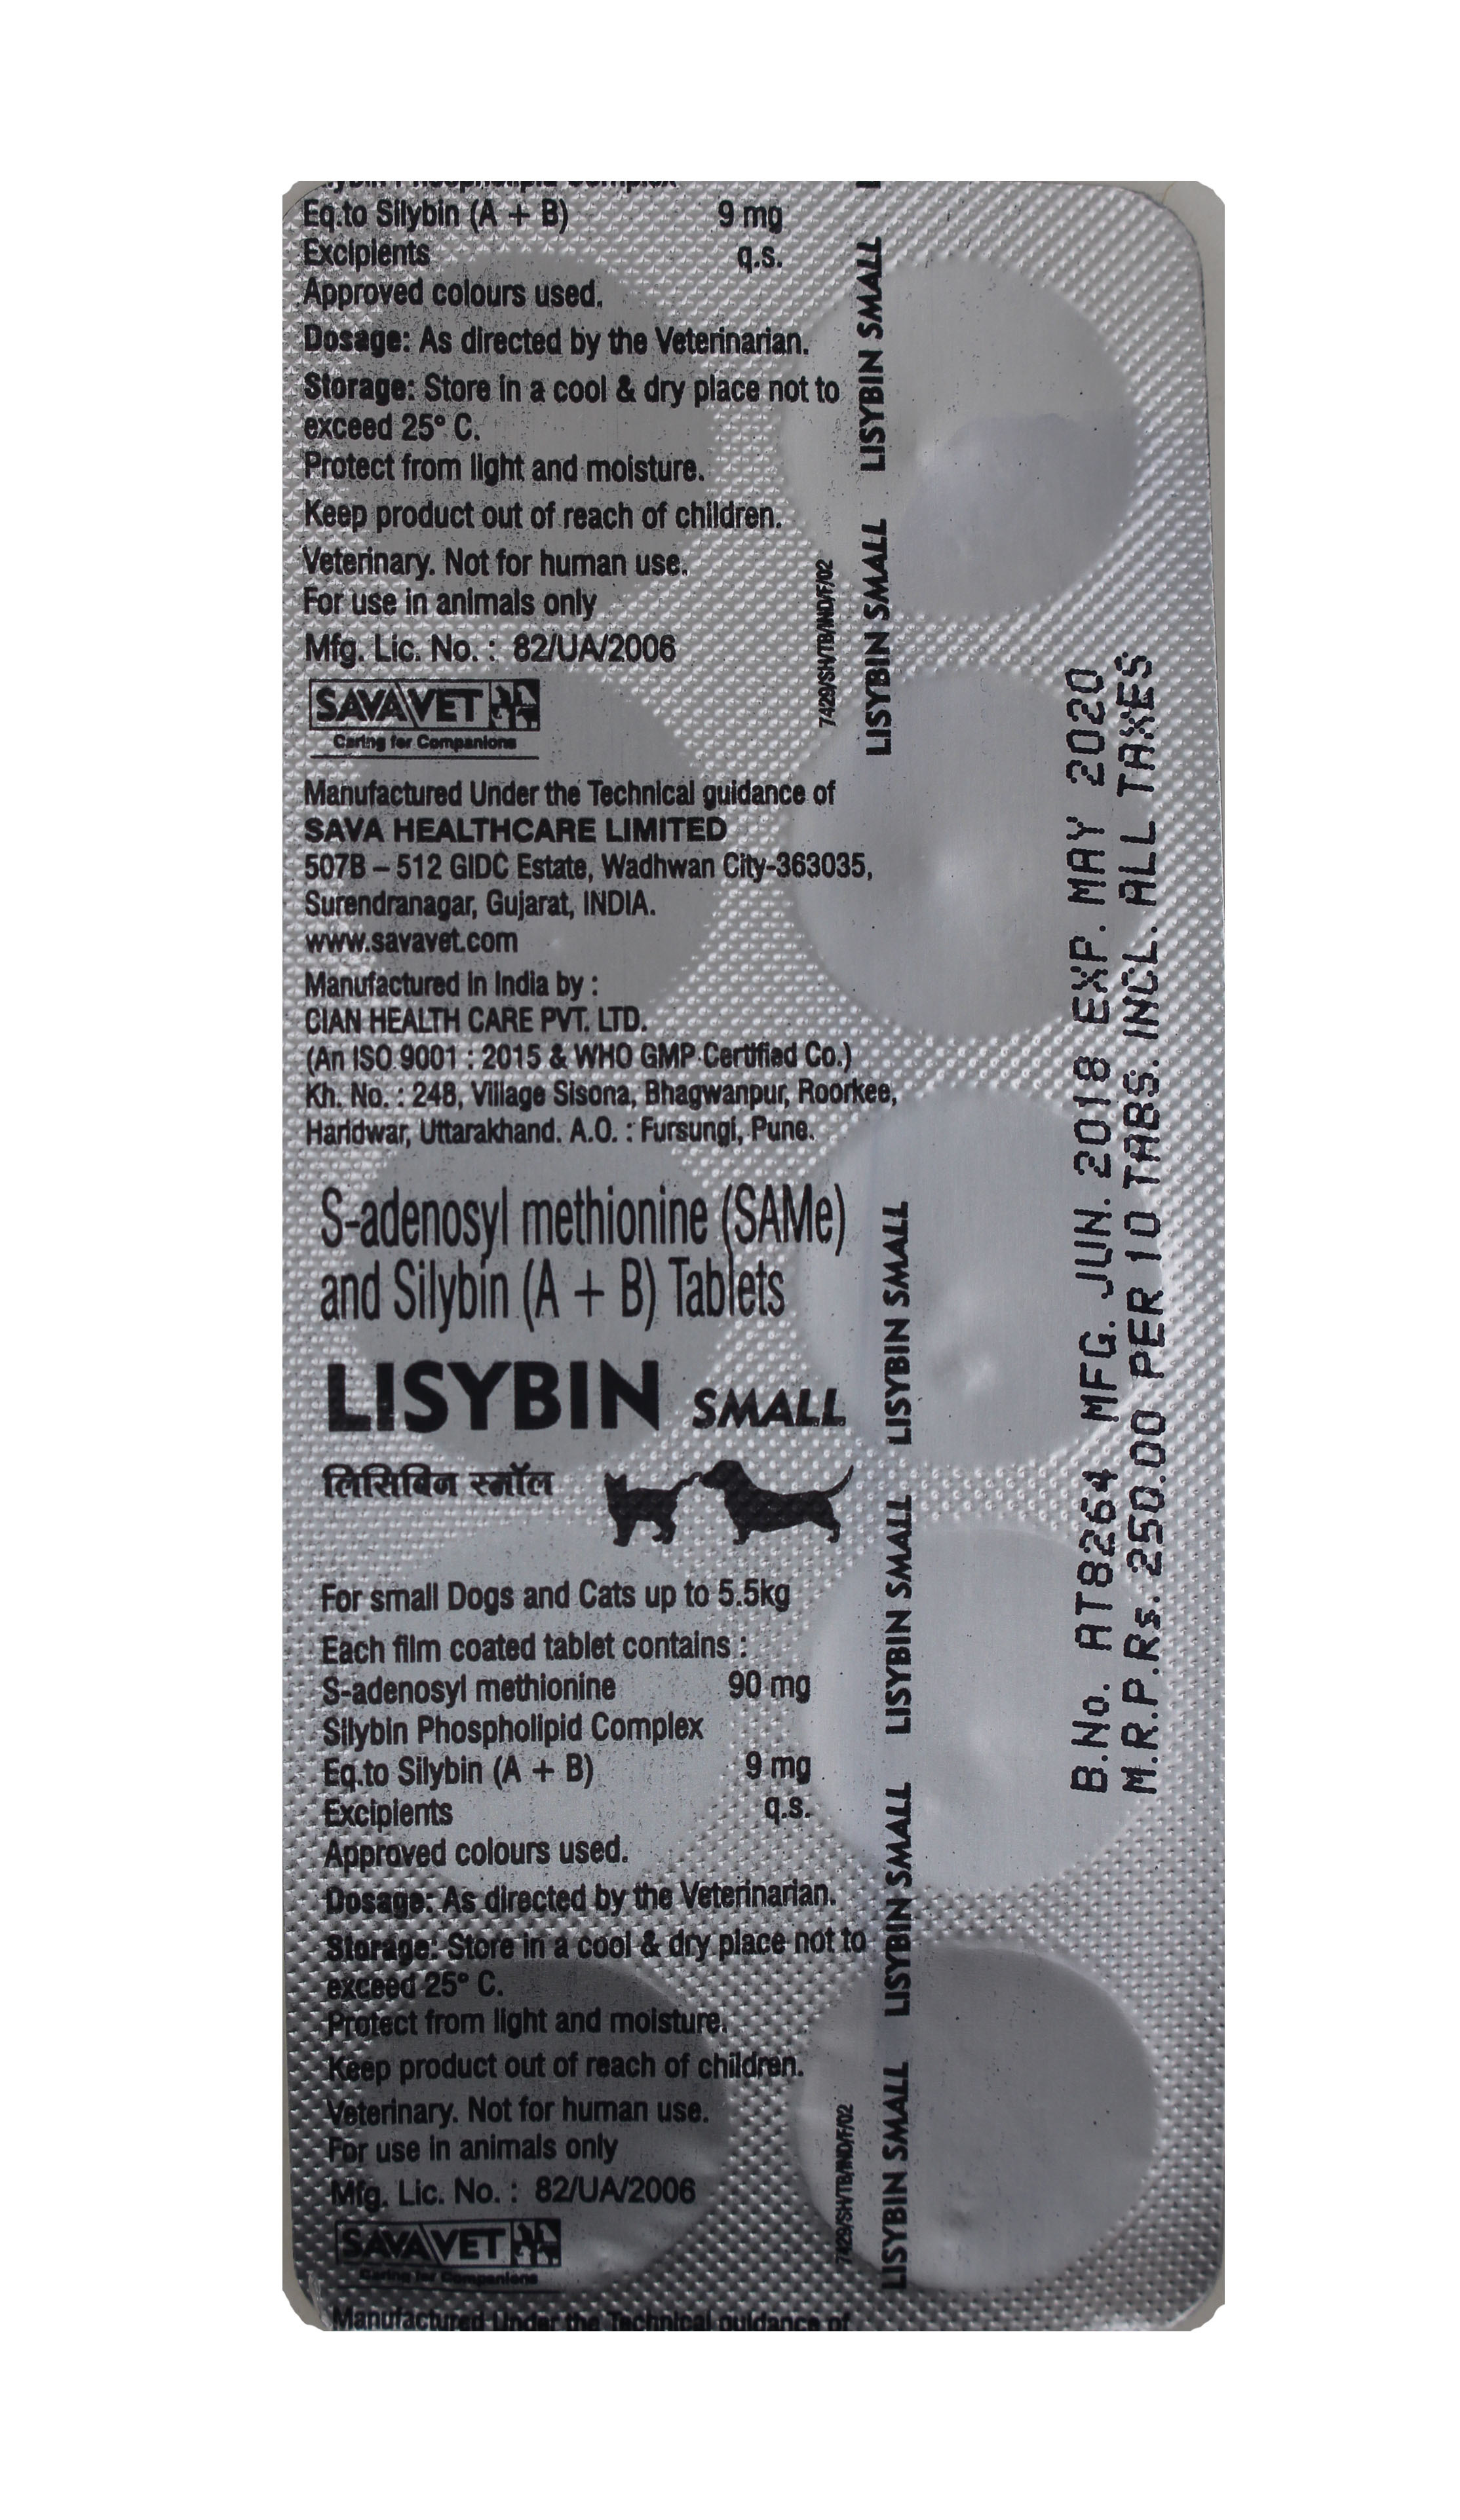 Lisybin Small S Adenosyl Methoionine 90mg Sil